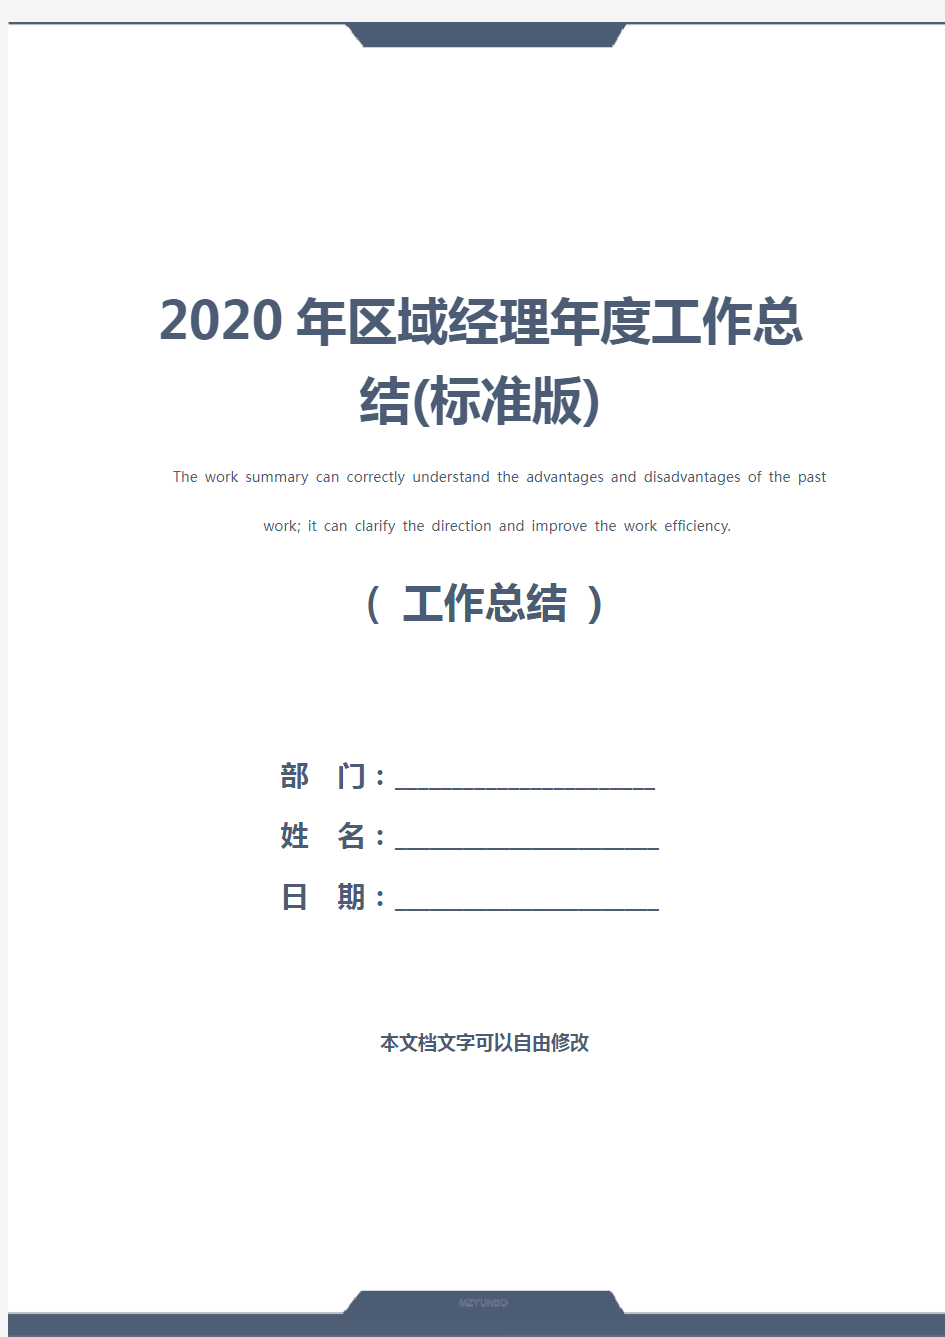 2020年区域经理年度工作总结(标准版)